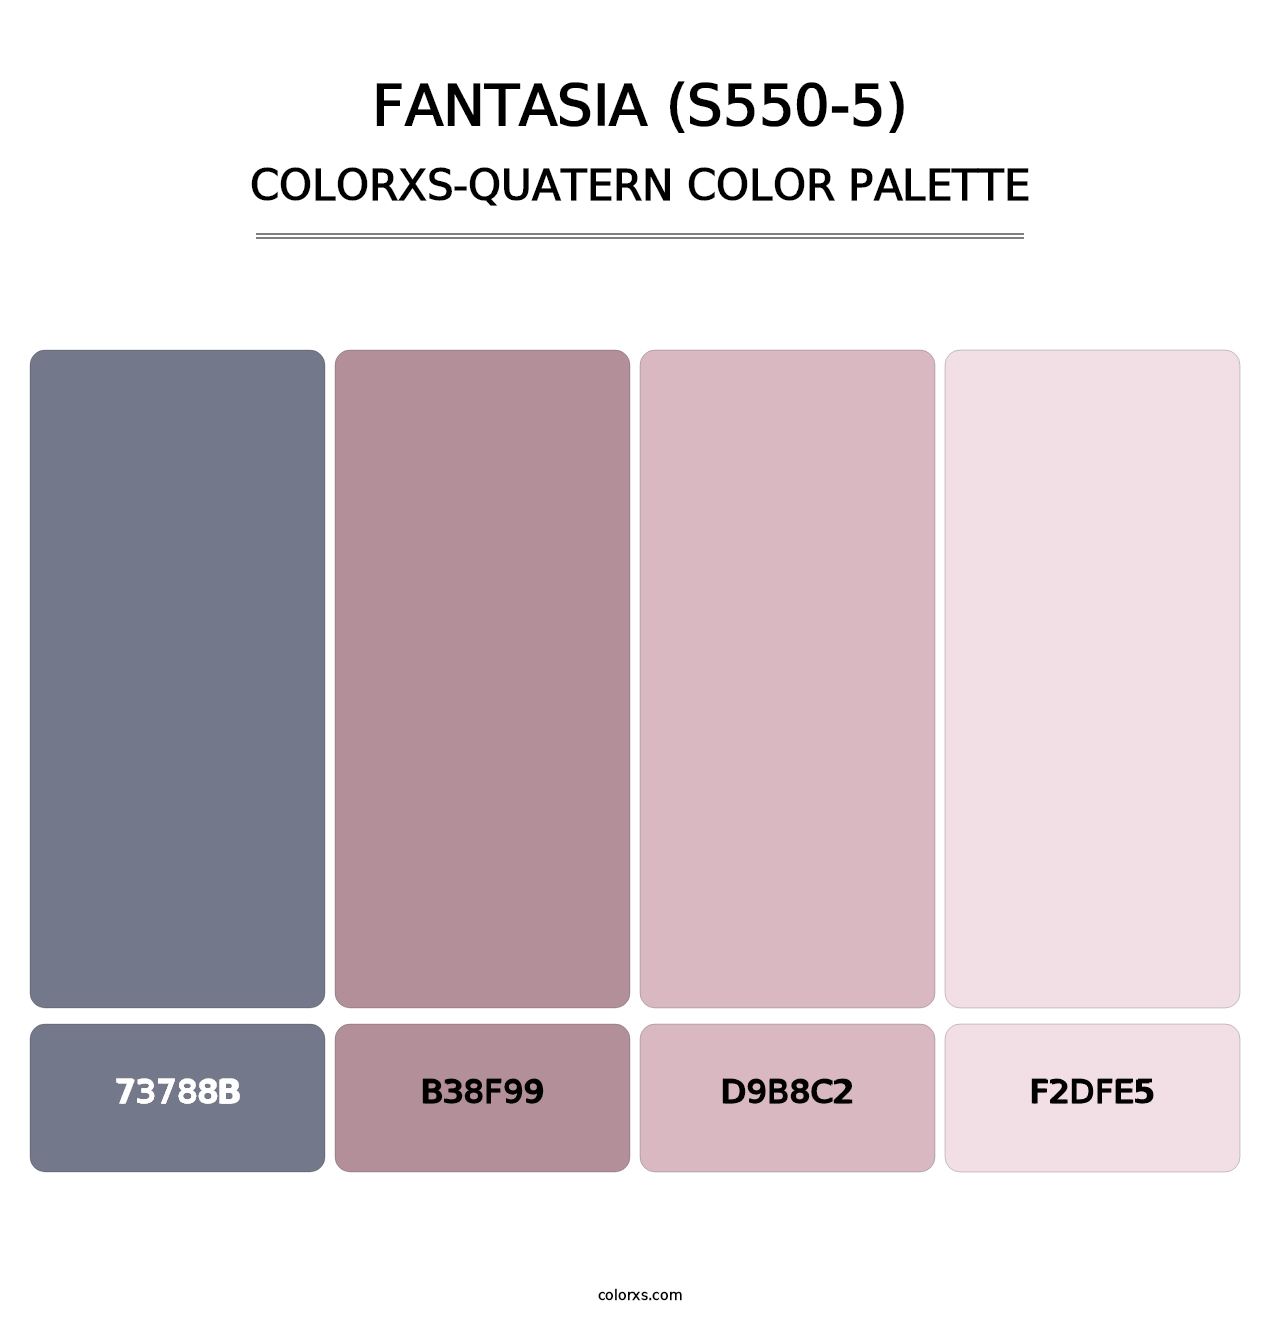 Fantasia (S550-5) - Colorxs Quatern Palette